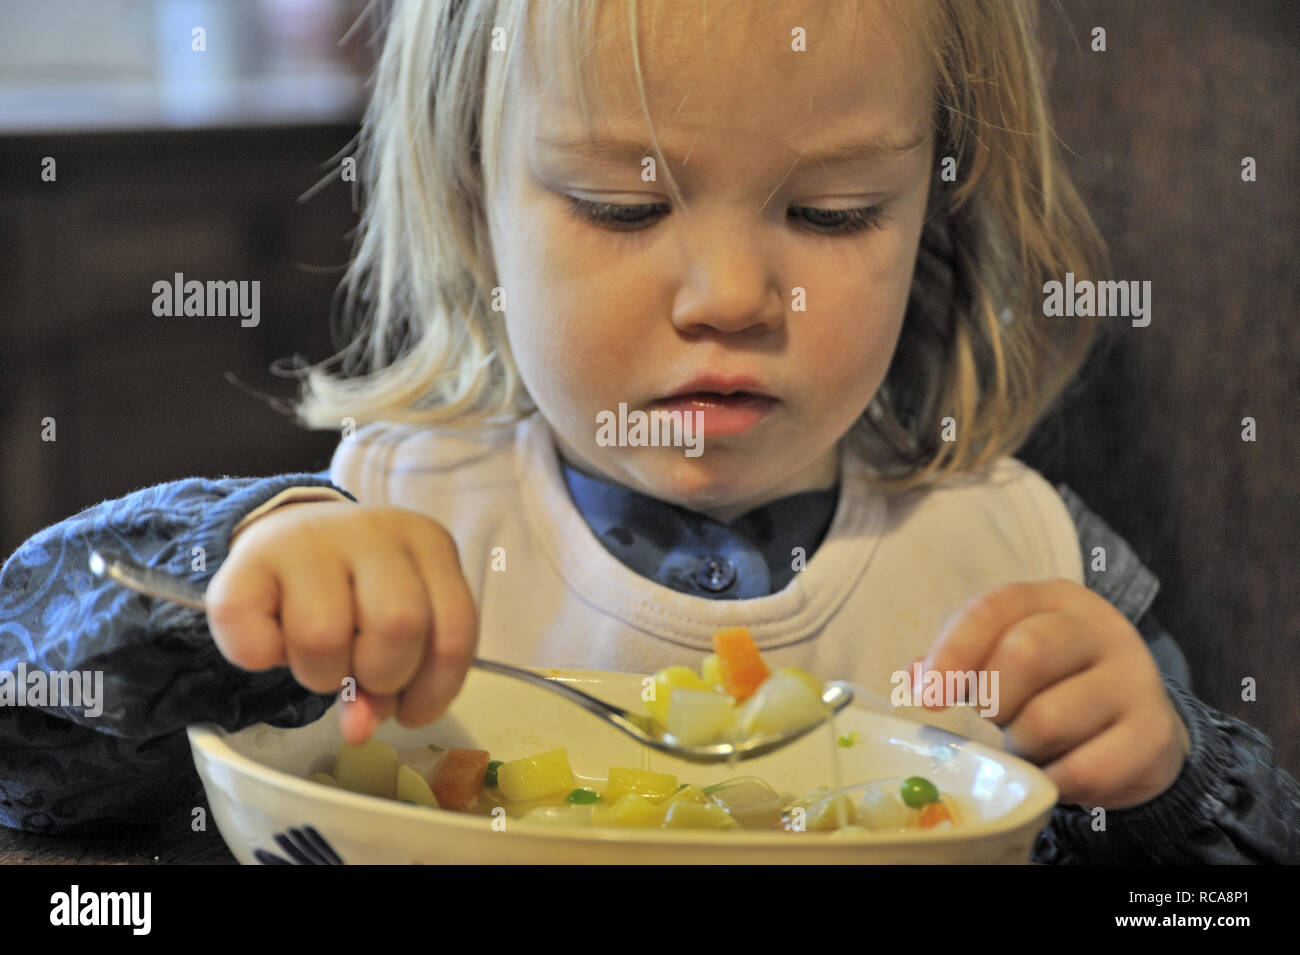 kleines Mädchen beim Essen, 2 Jahre alt | little girl eating, two years old Stock Photo